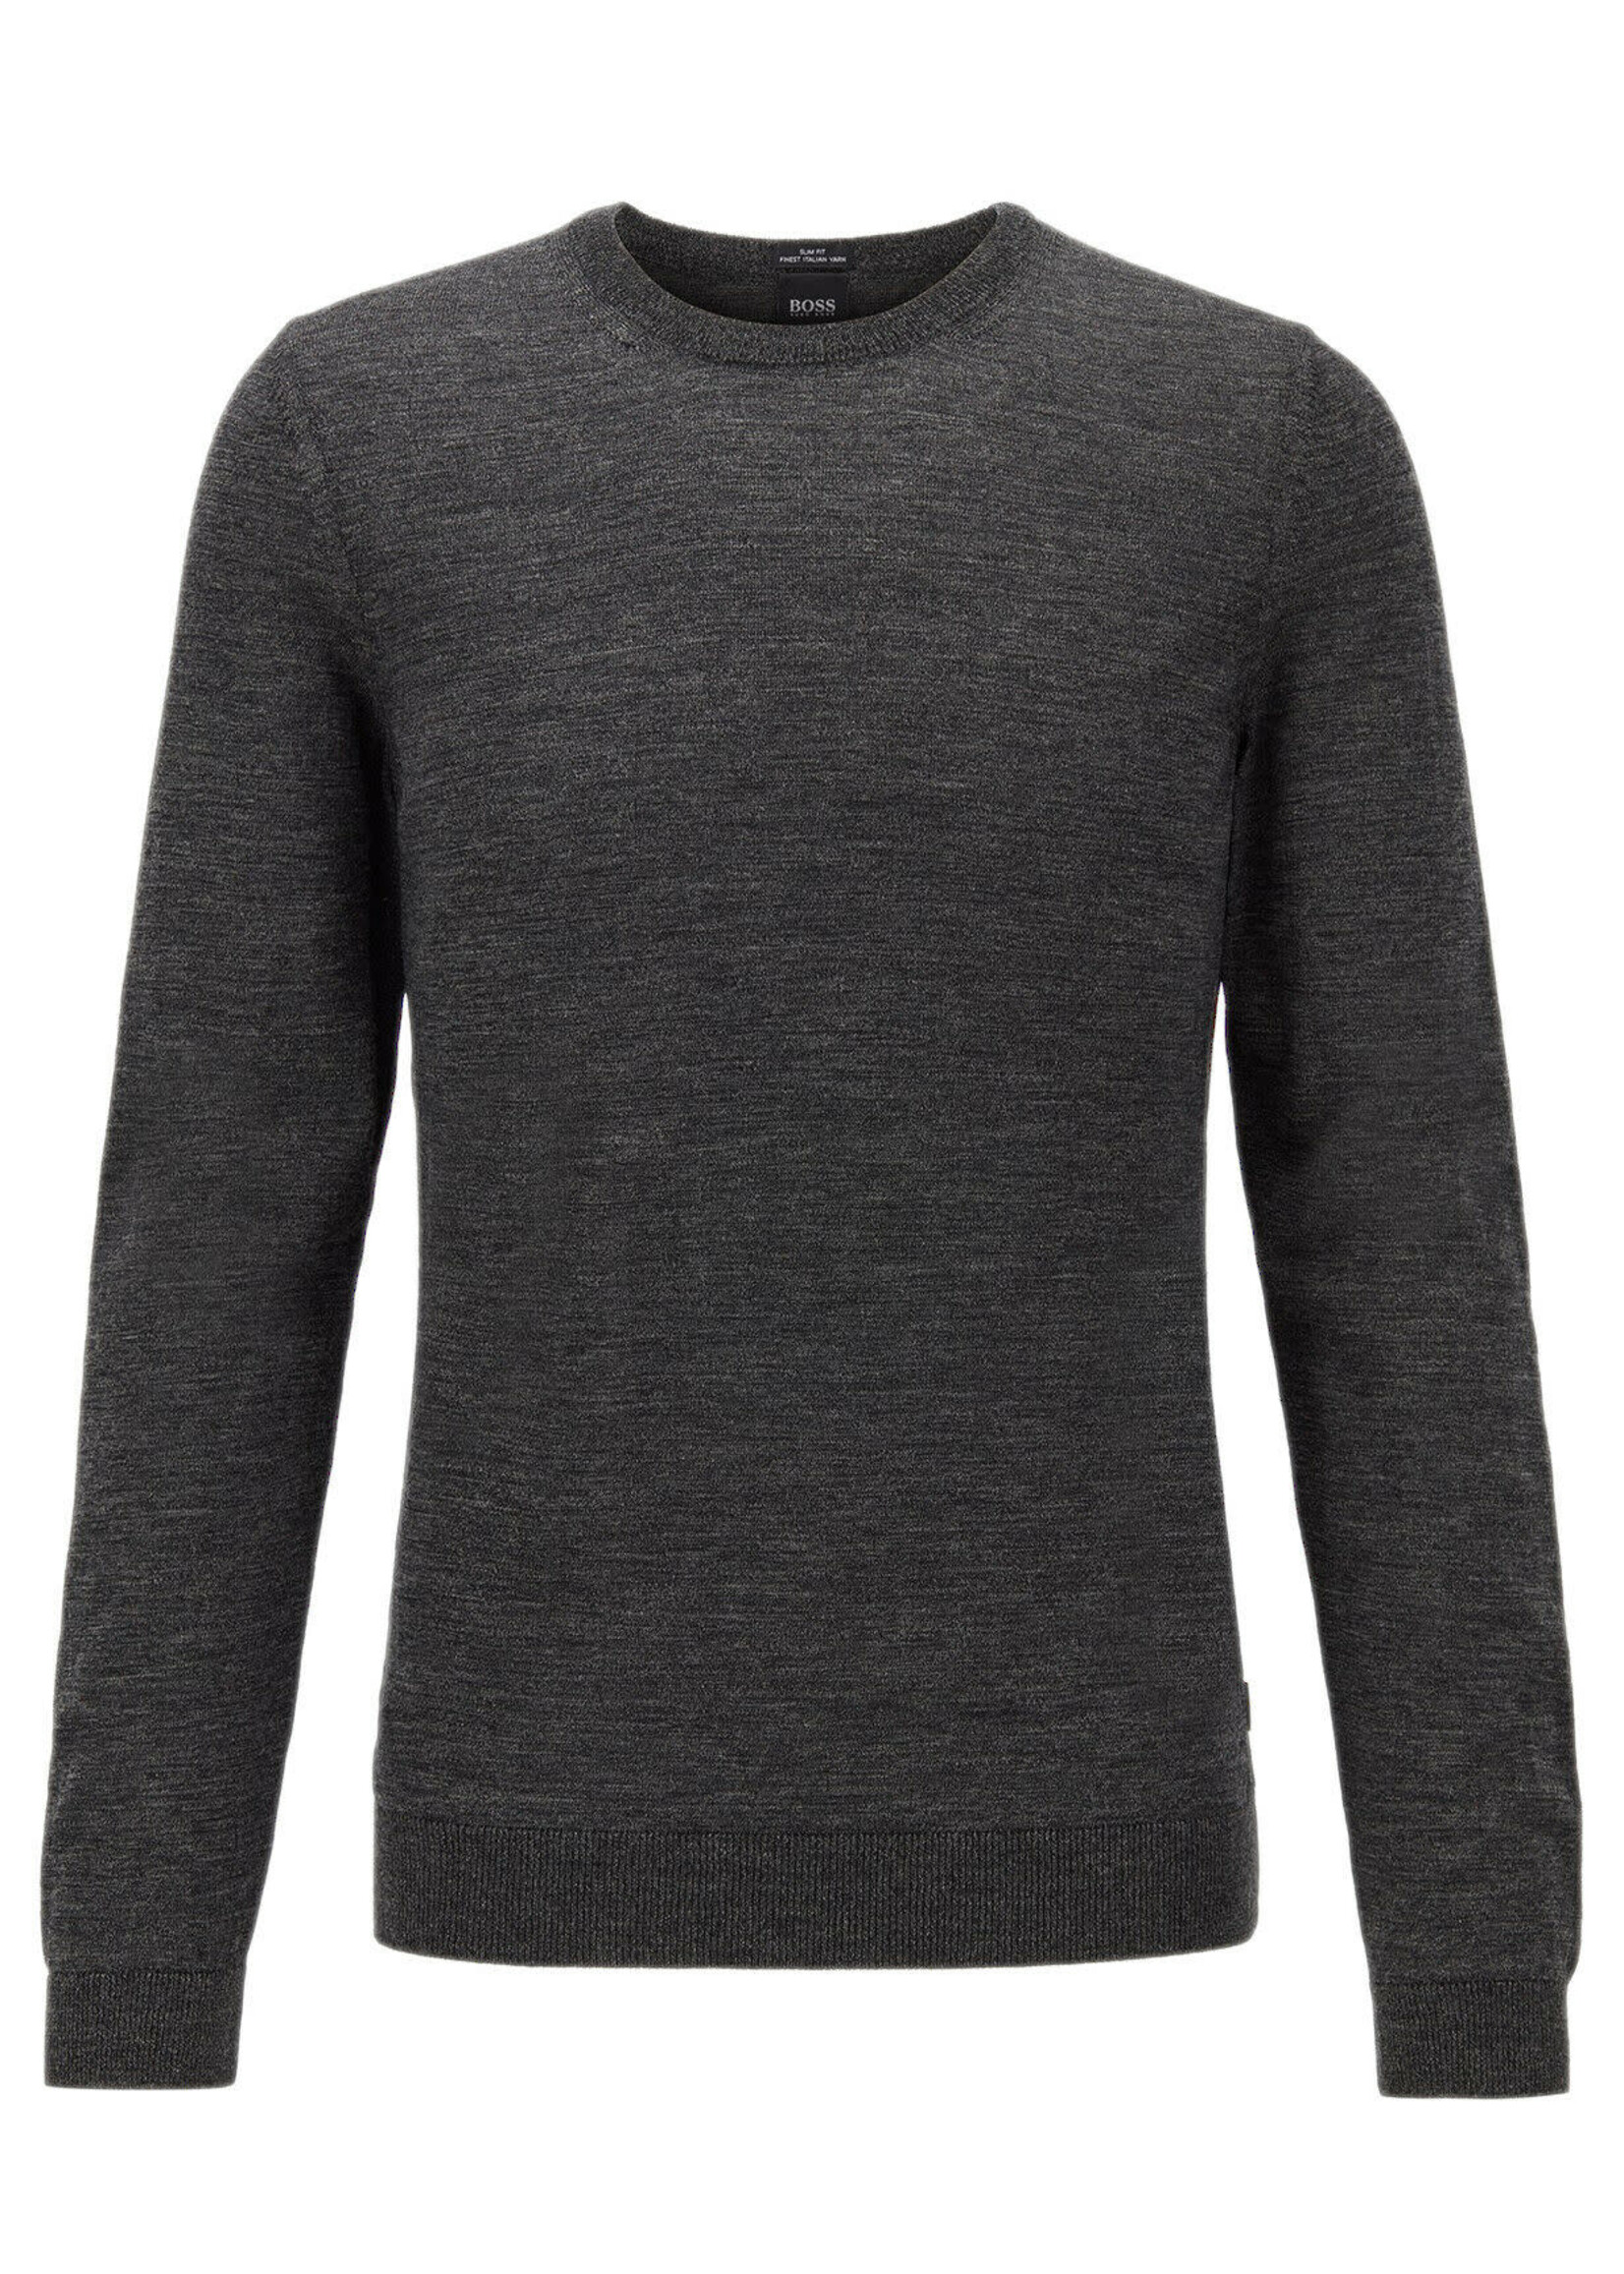 Hugo Boss Hugo Boss Grey Merino Wool Slim Fit Sweater